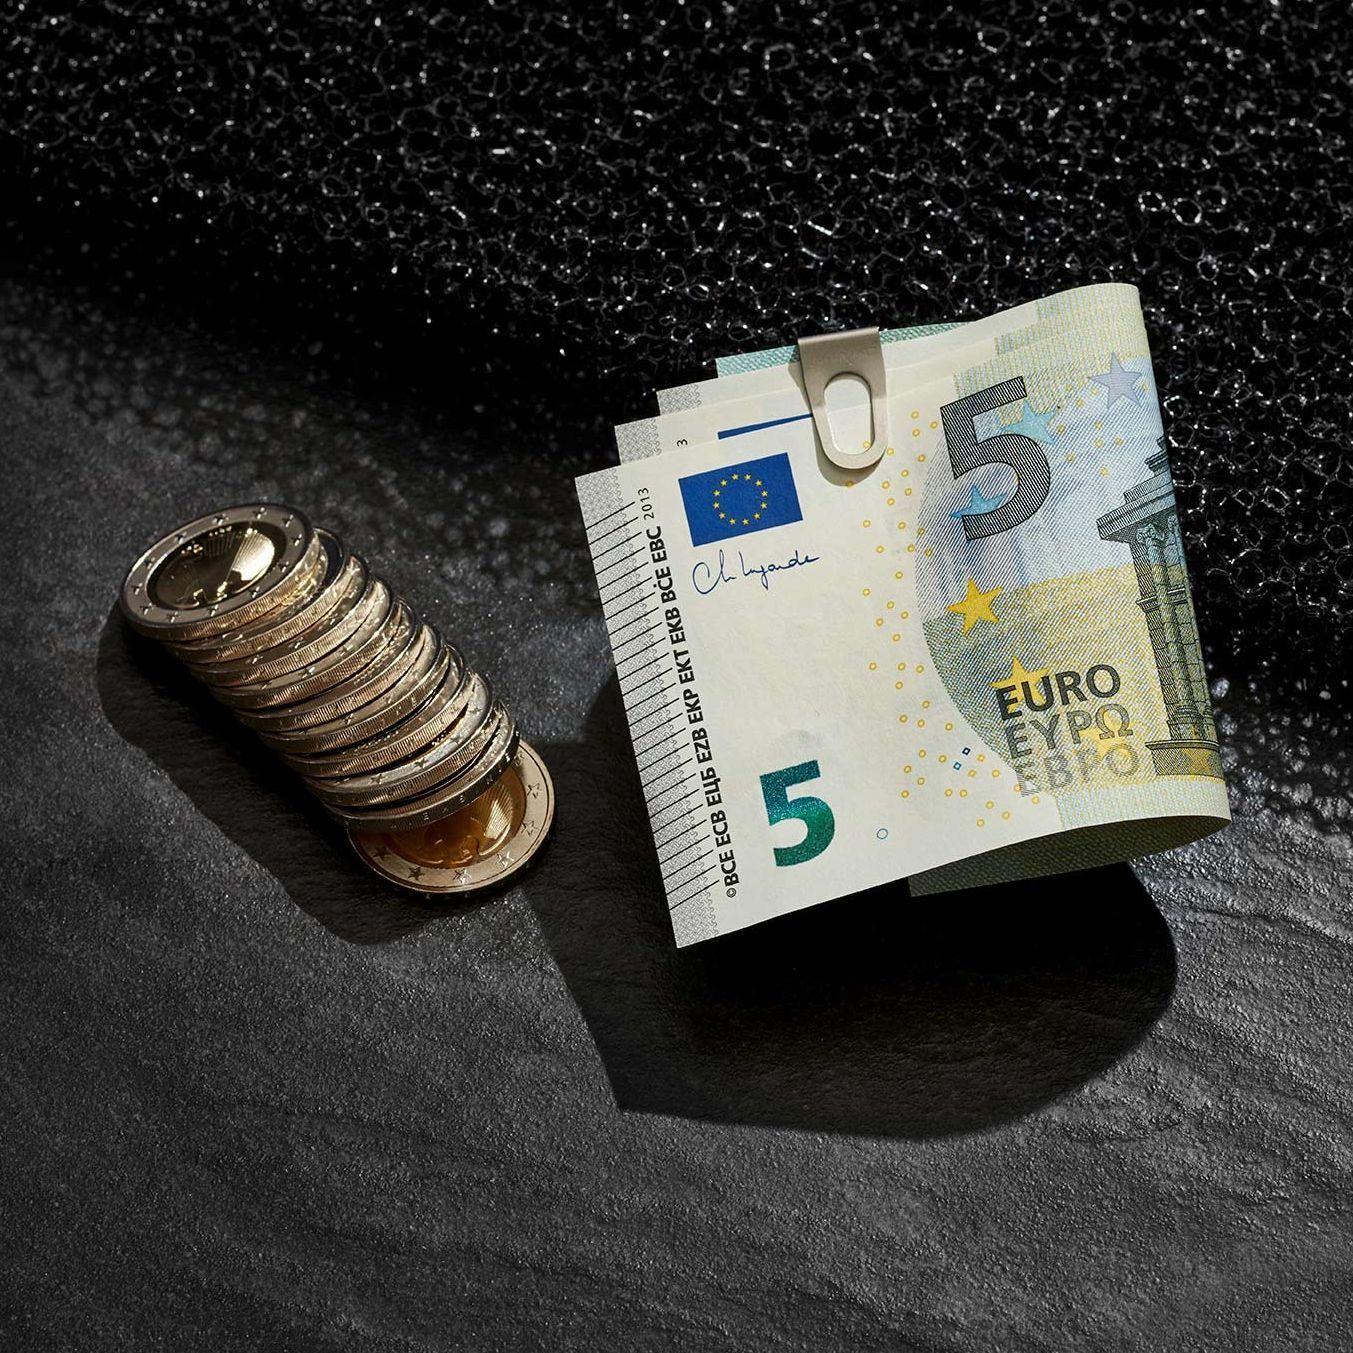 Inszeniertes Stillleben mit Eurogeldscheinen in einer Geldklammer und aufgereihten Münzen daneben. Sie liegen auf einem dunklen Untergrund.